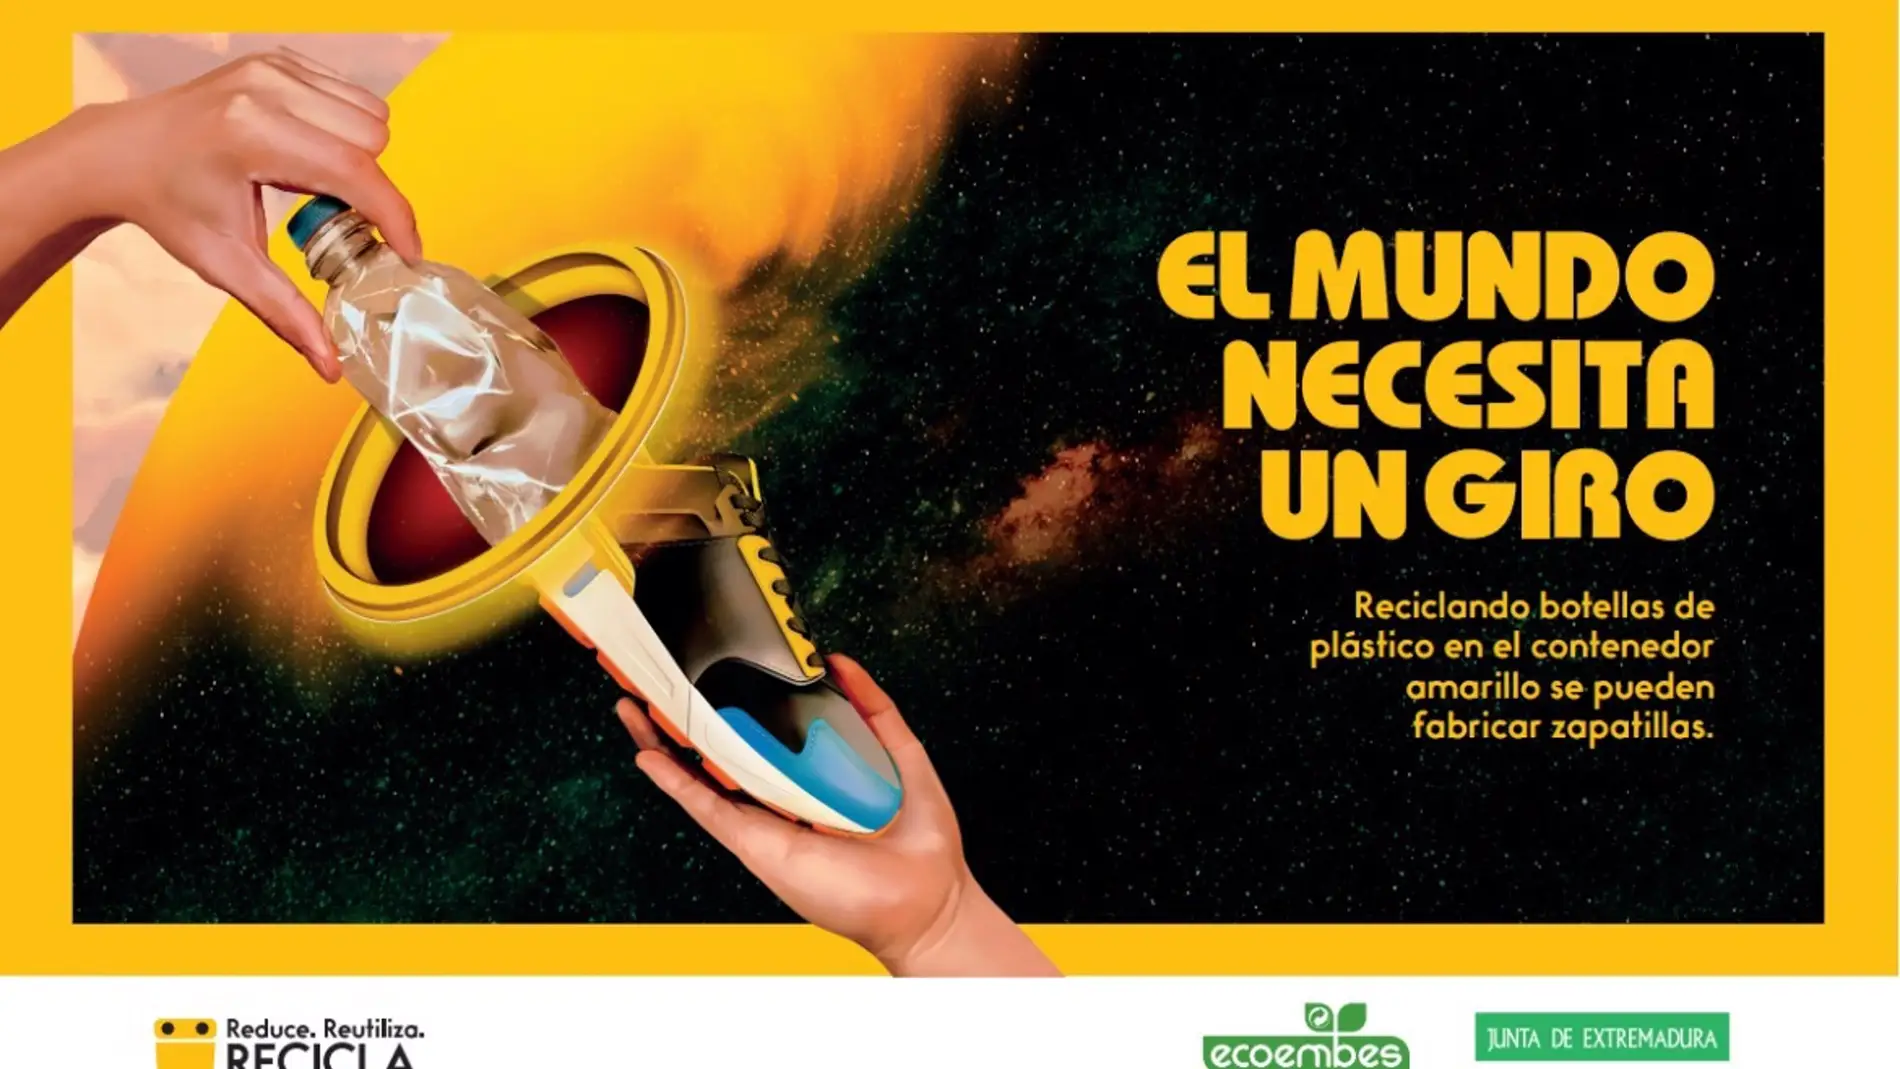 Rico Frente temperatura Junta y Ecoembes unidos para concienciar sobre el reciclaje de envases |  Onda Cero Radio